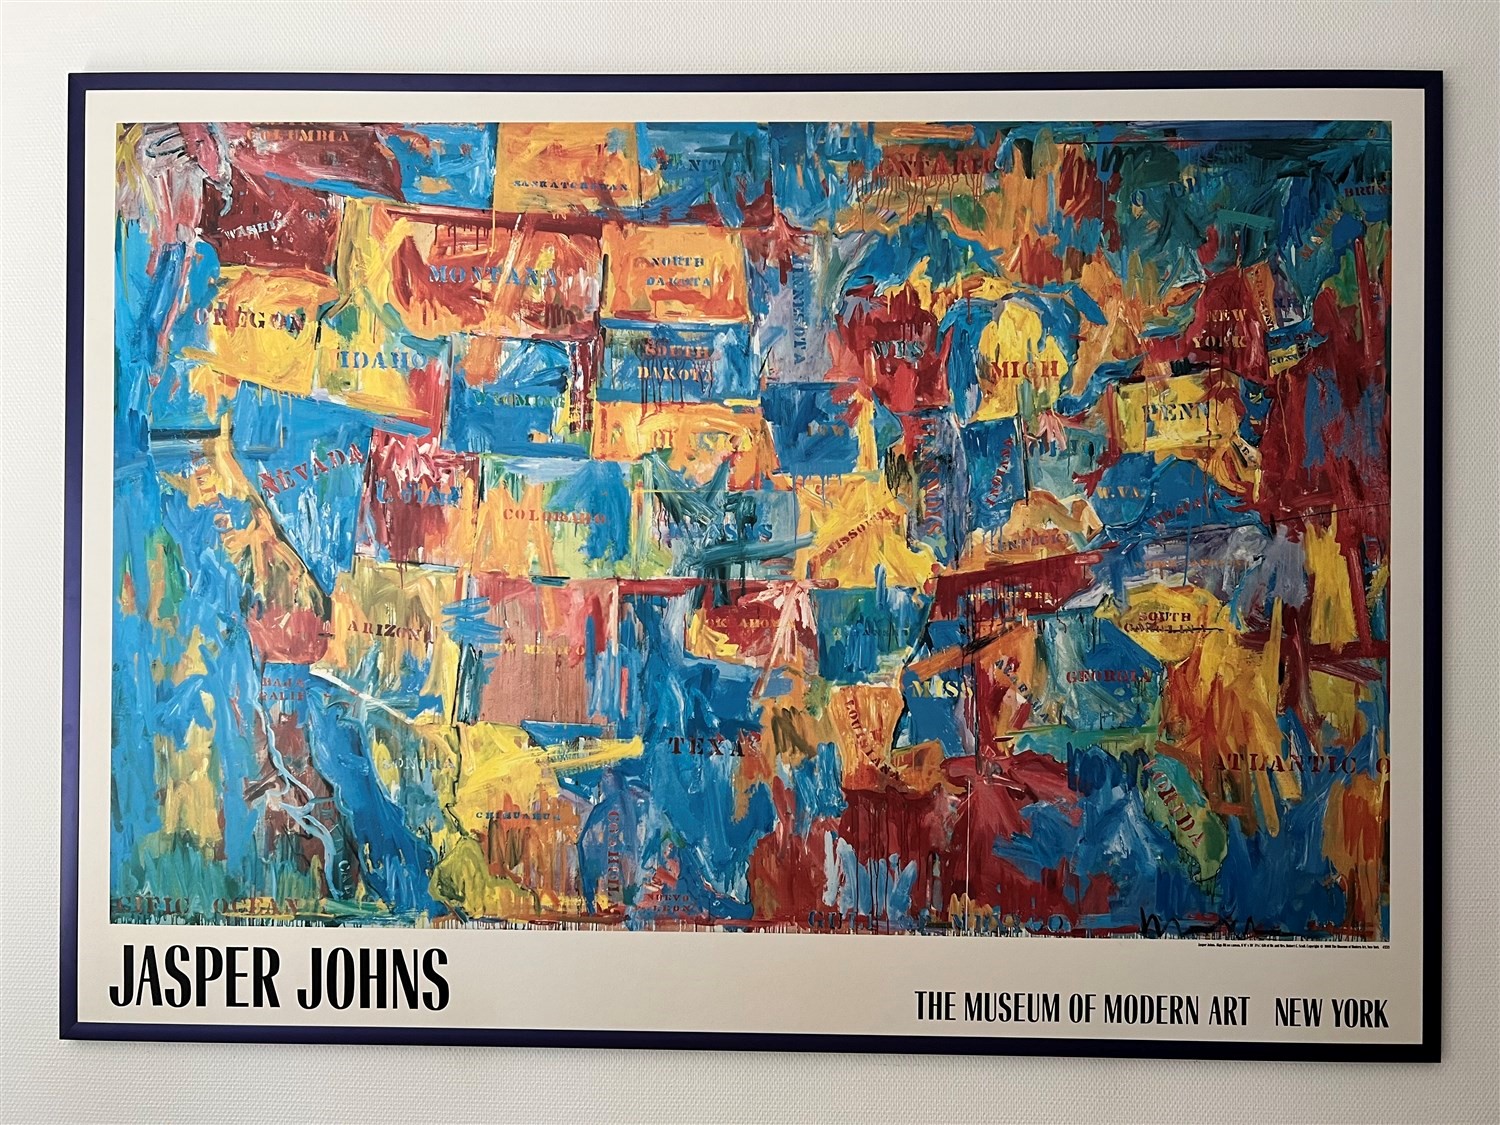 Image Jasper Johns Museum of Modern Art New York